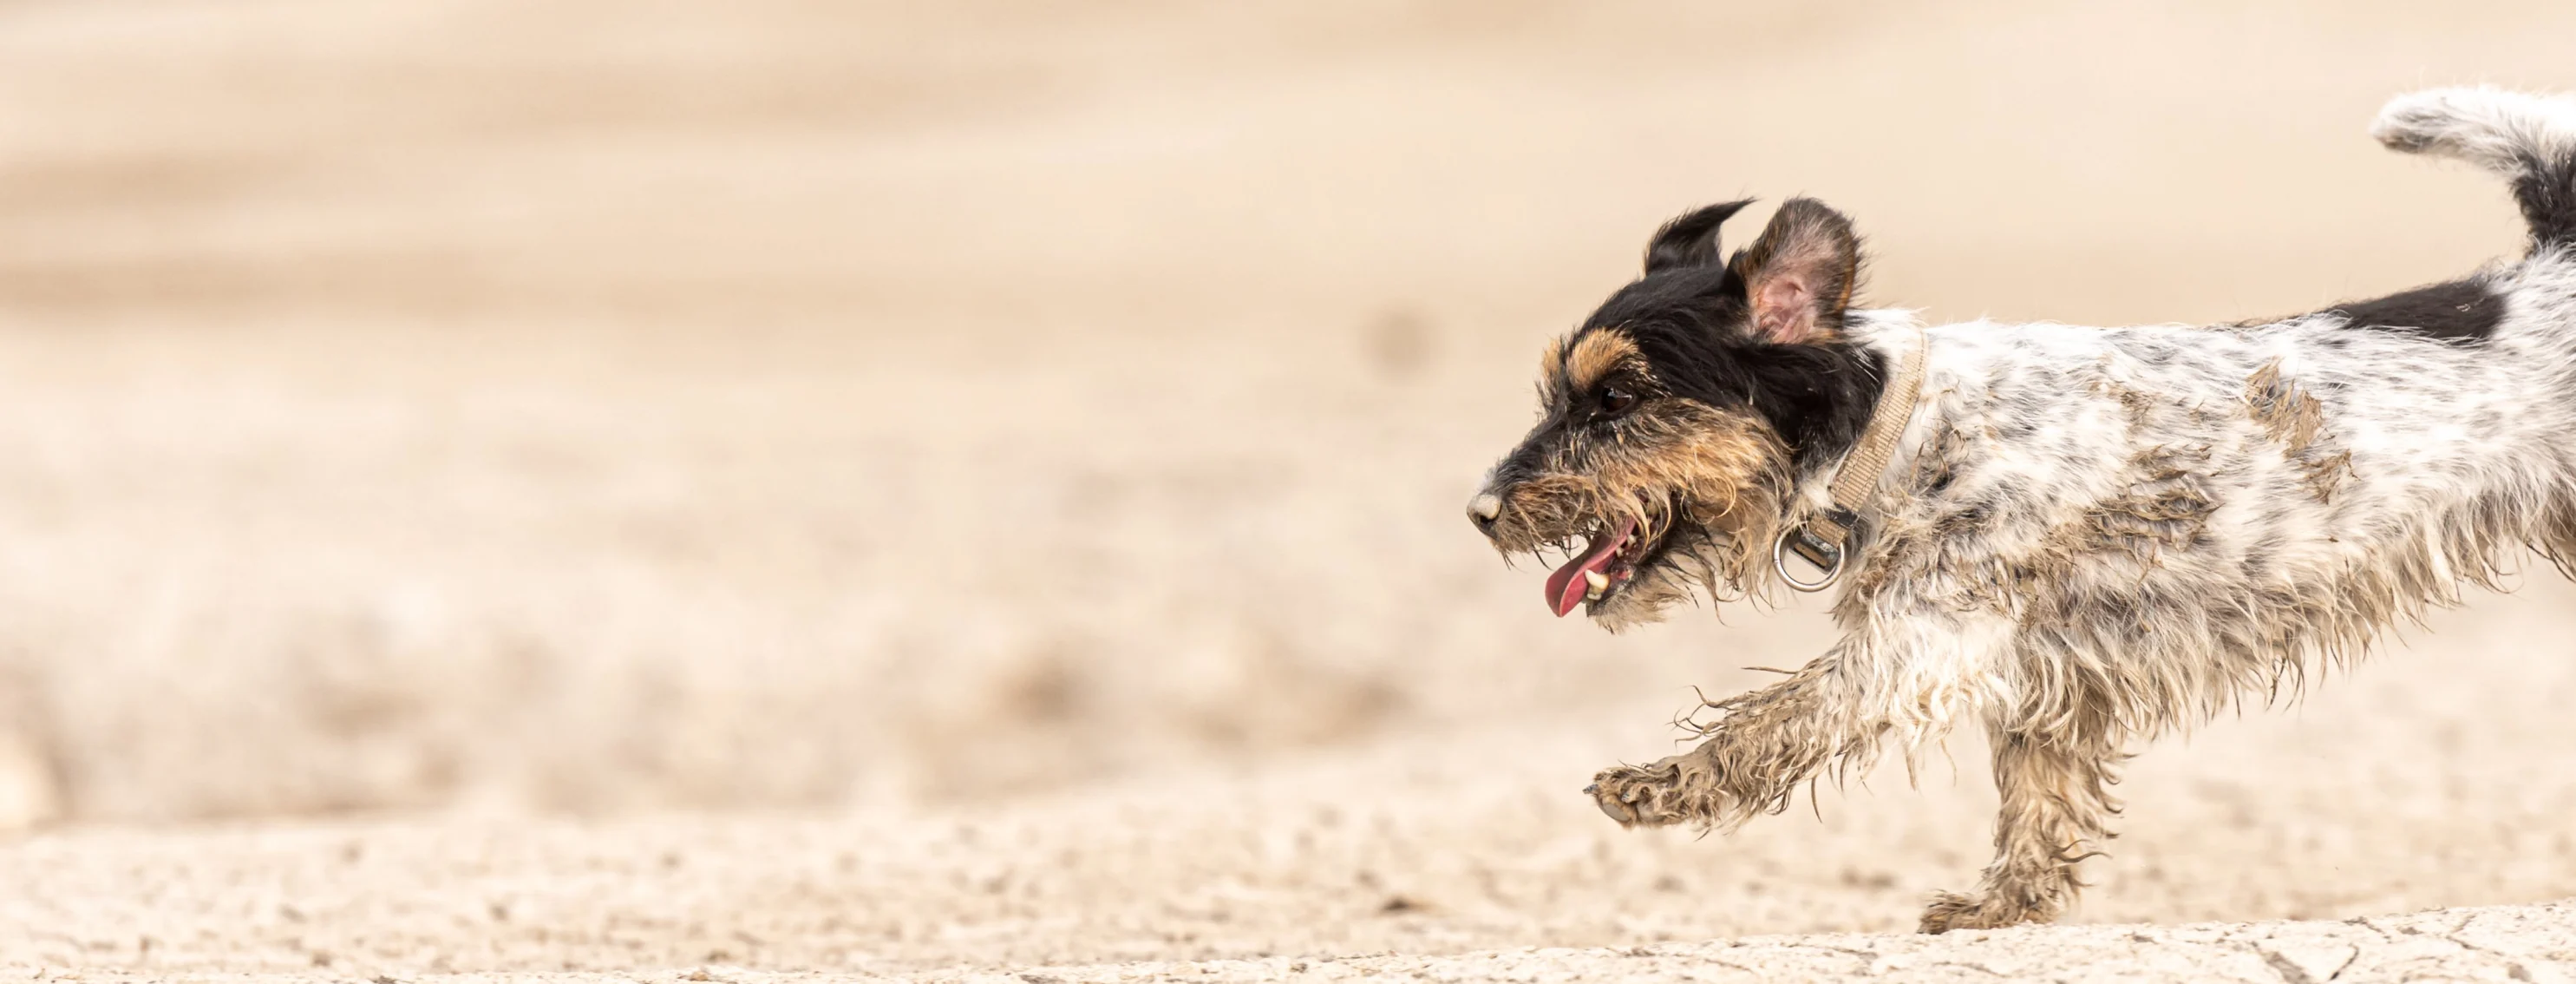 Dog running over sand